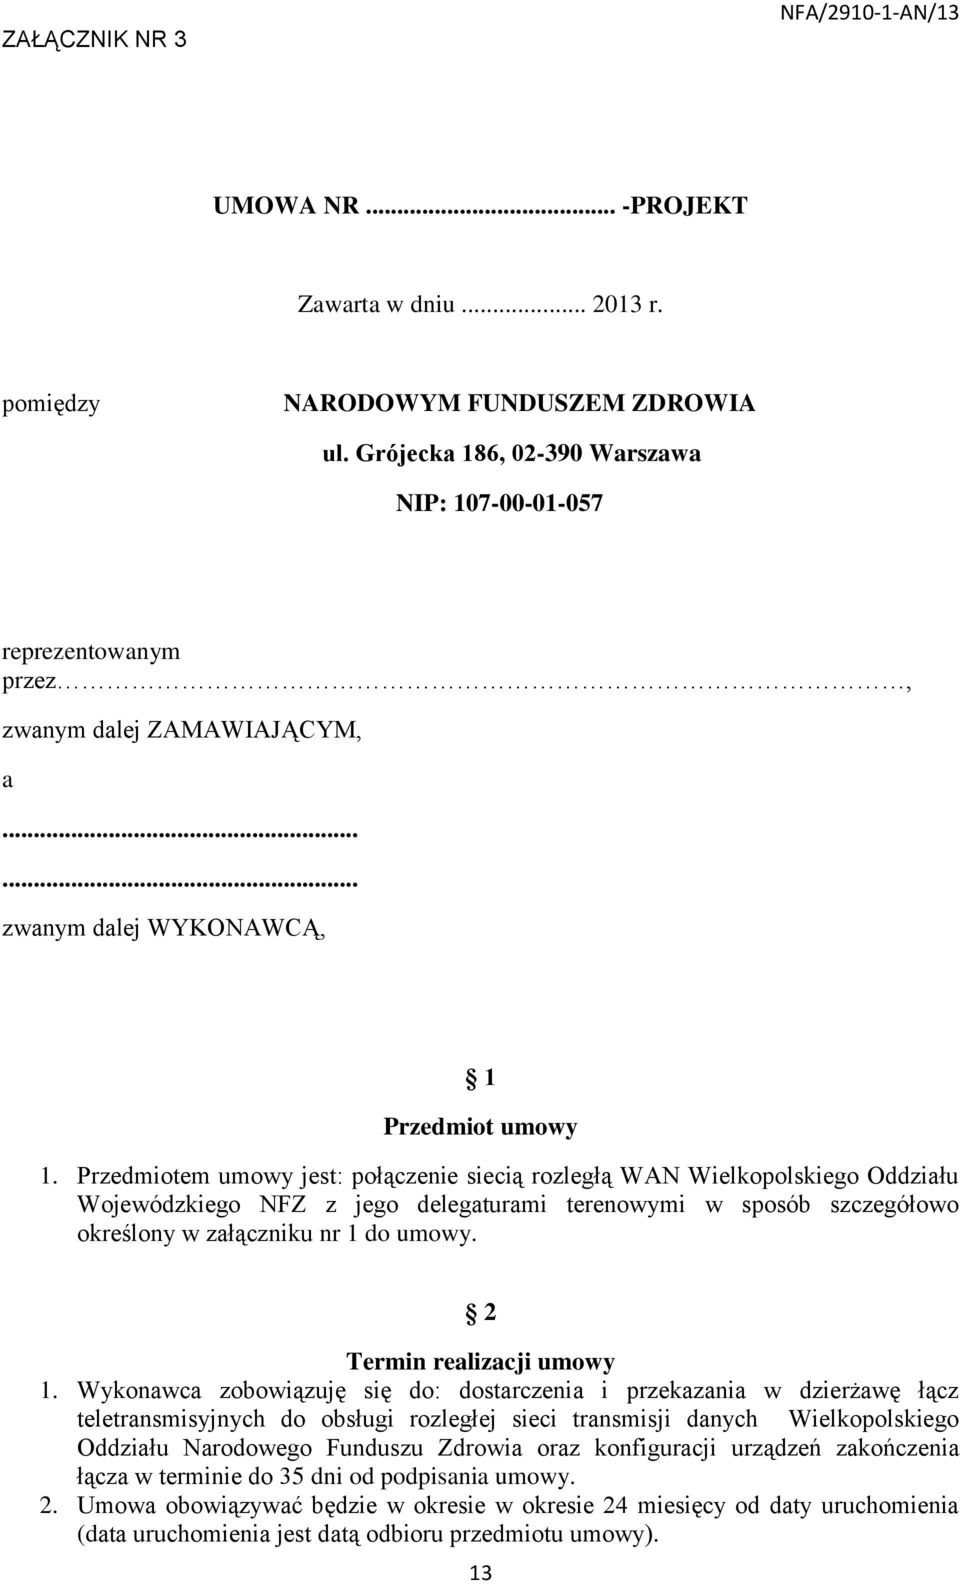 Przedmiotem umowy jest: połączenie siecią rozległą WAN Wielkopolskiego Oddziału Wojewódzkiego NFZ z jego delegaturami terenowymi w sposób szczegółowo określony w załączniku nr 1 do umowy.